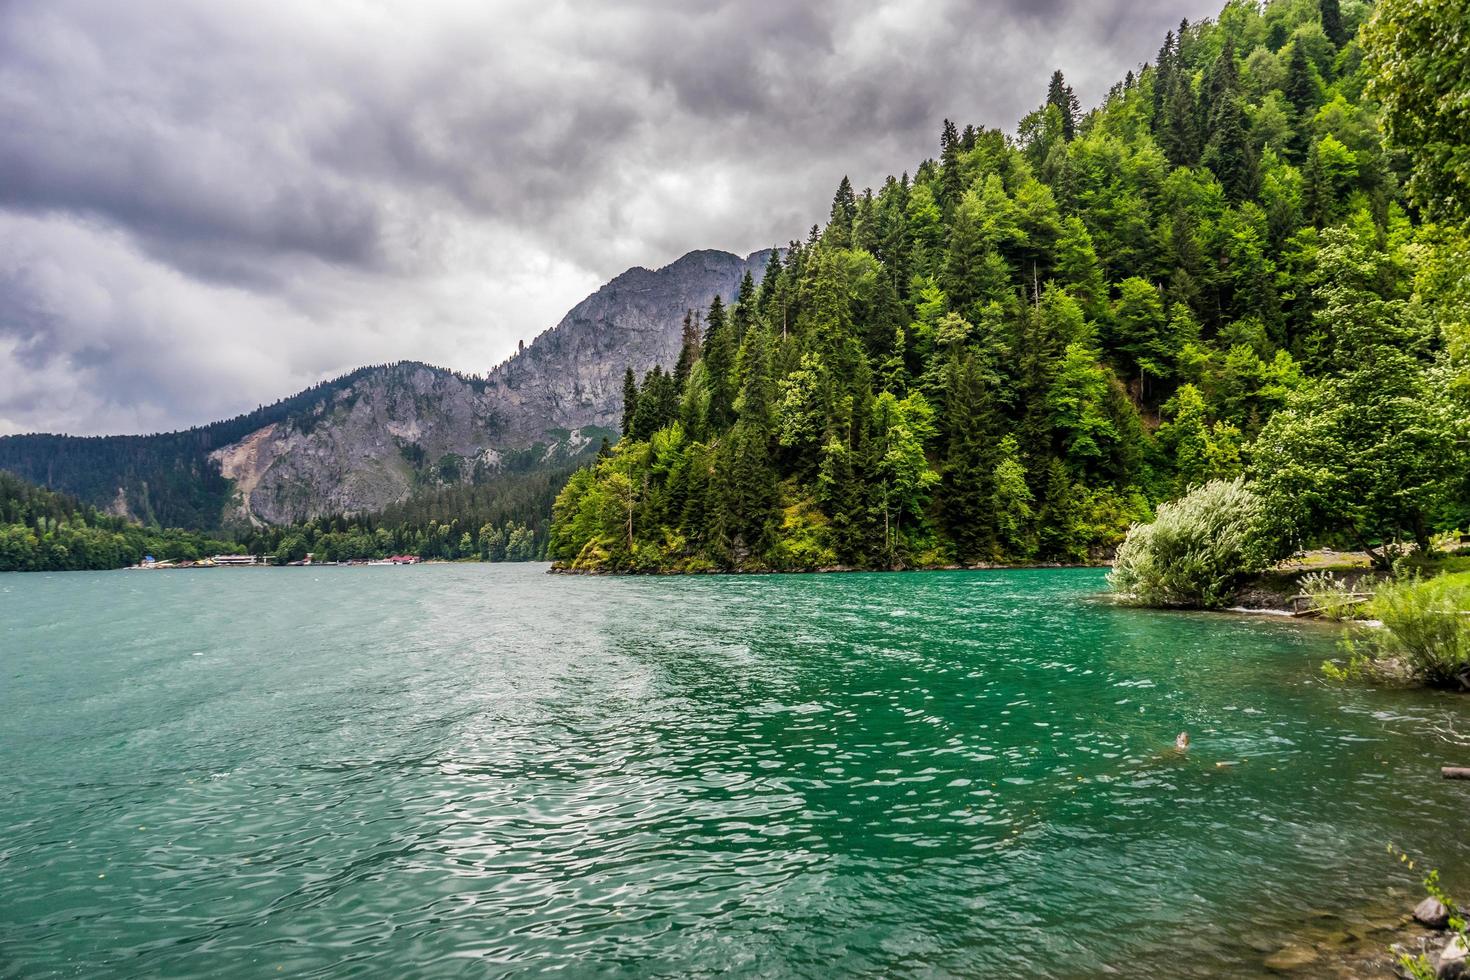 lago verde enmarcado por el bosque y las montañas con un cielo nublado foto